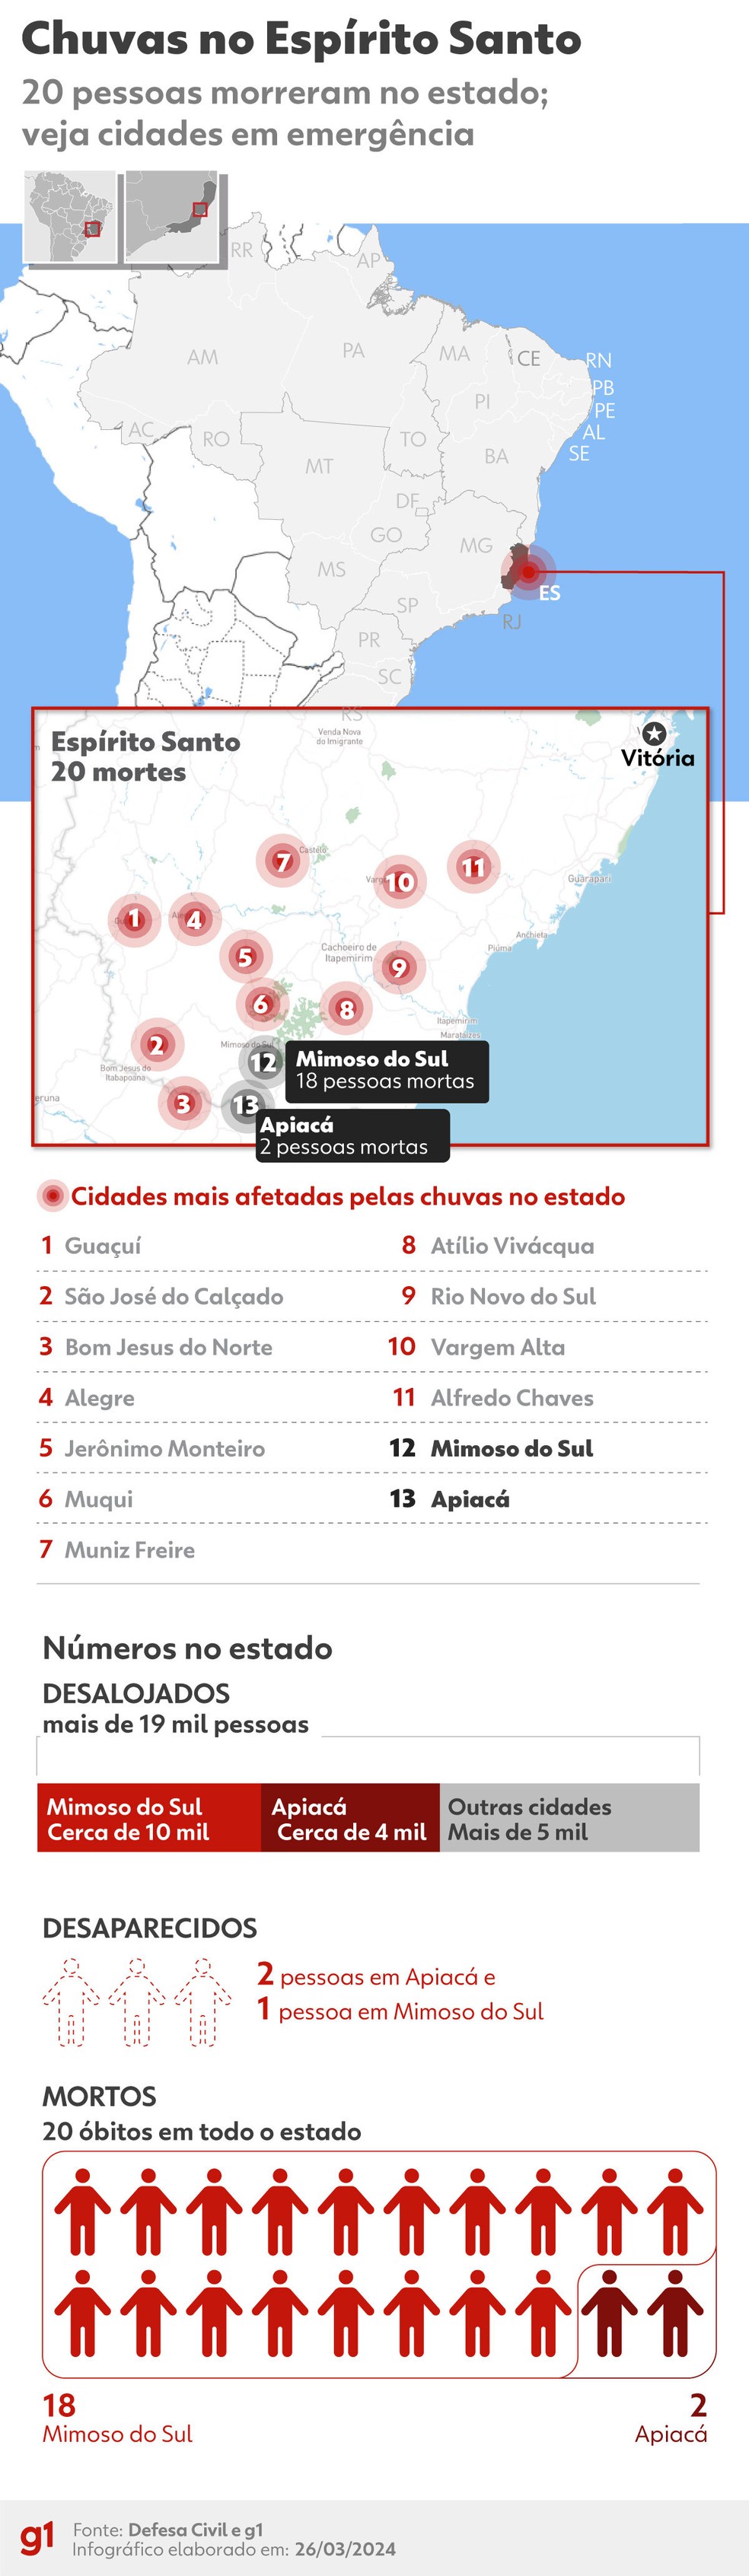 Mapa mostra cidades atingidas, mortos e desalojados após chuva no Espírito Santo — Foto: g1